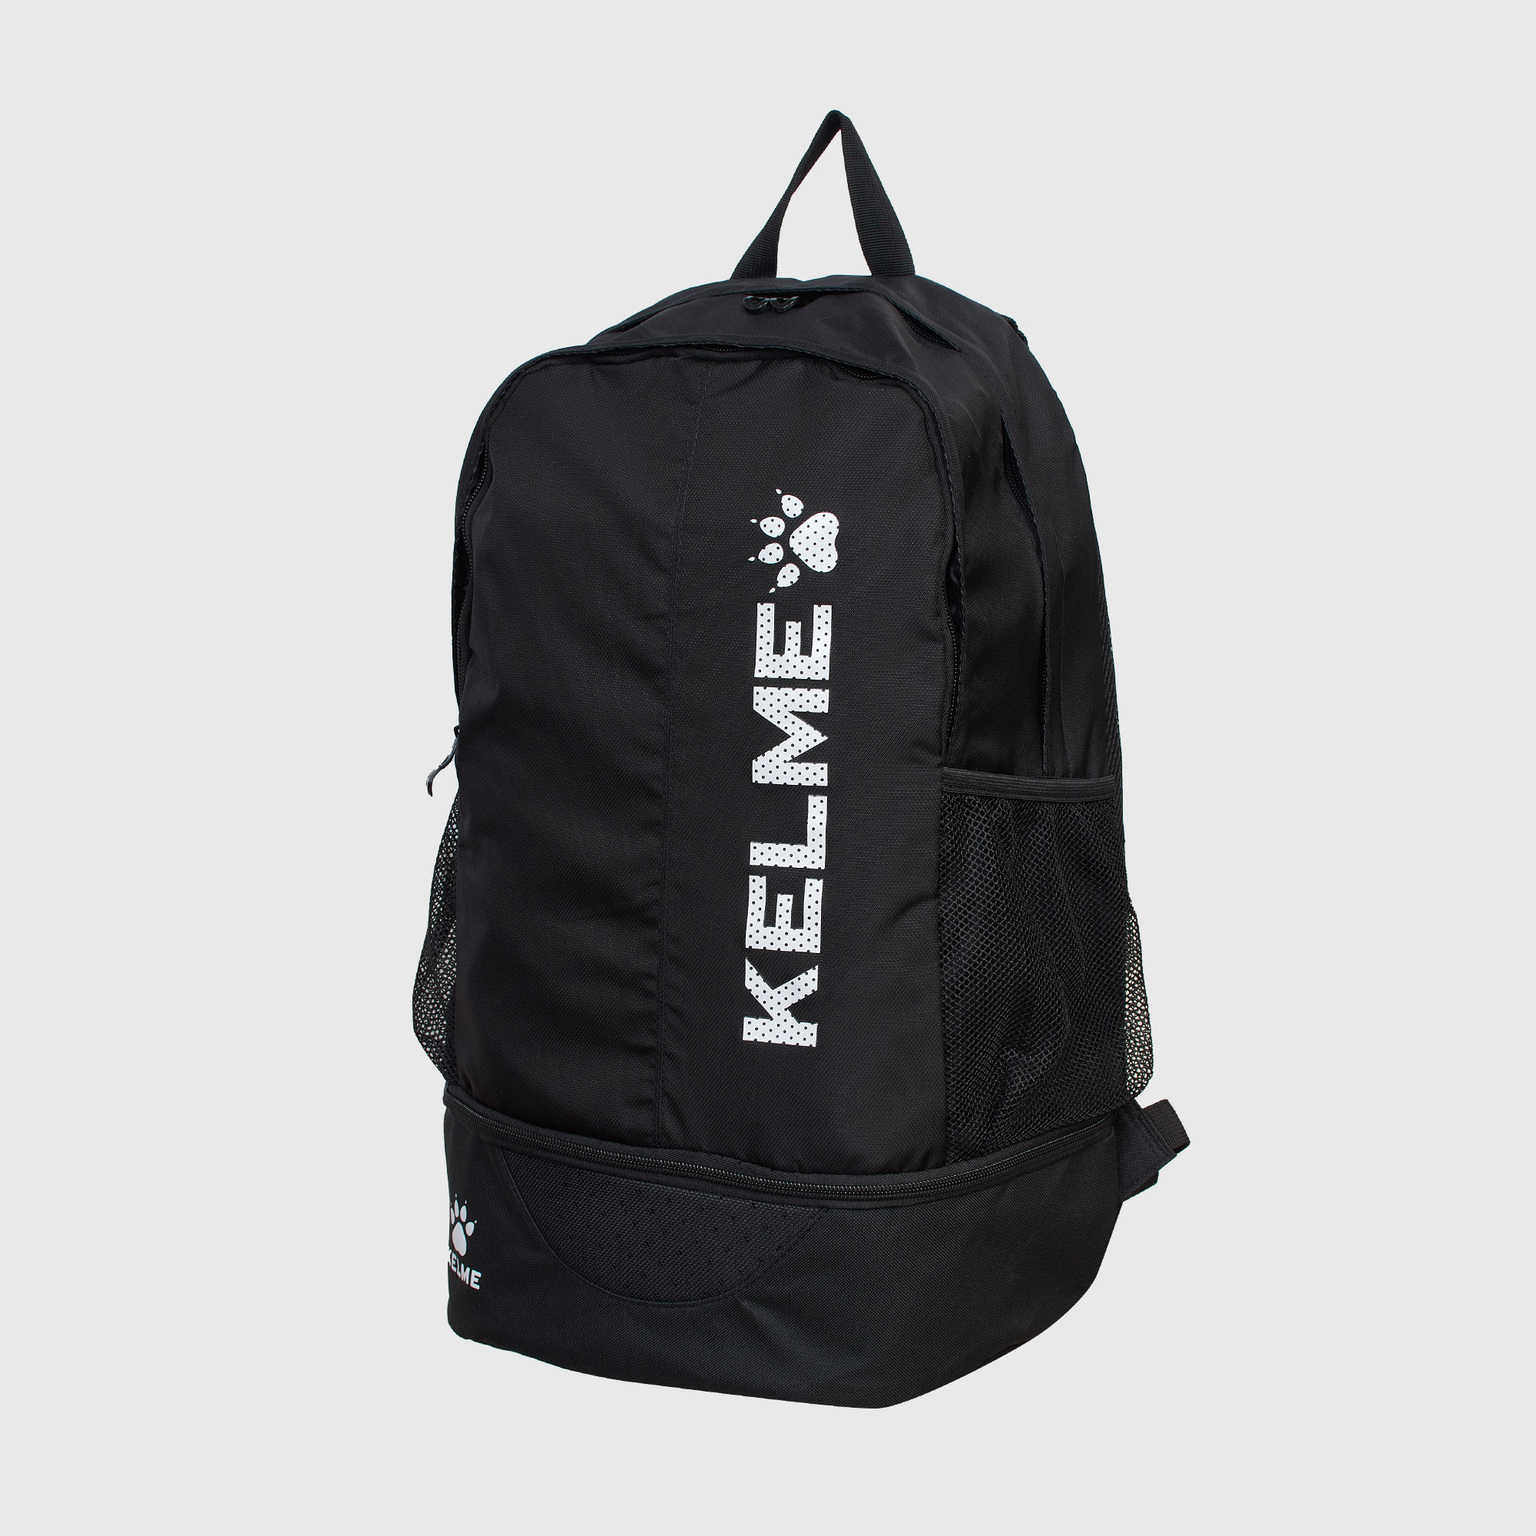 Рюкзак Kelme Backpack 9891020-003